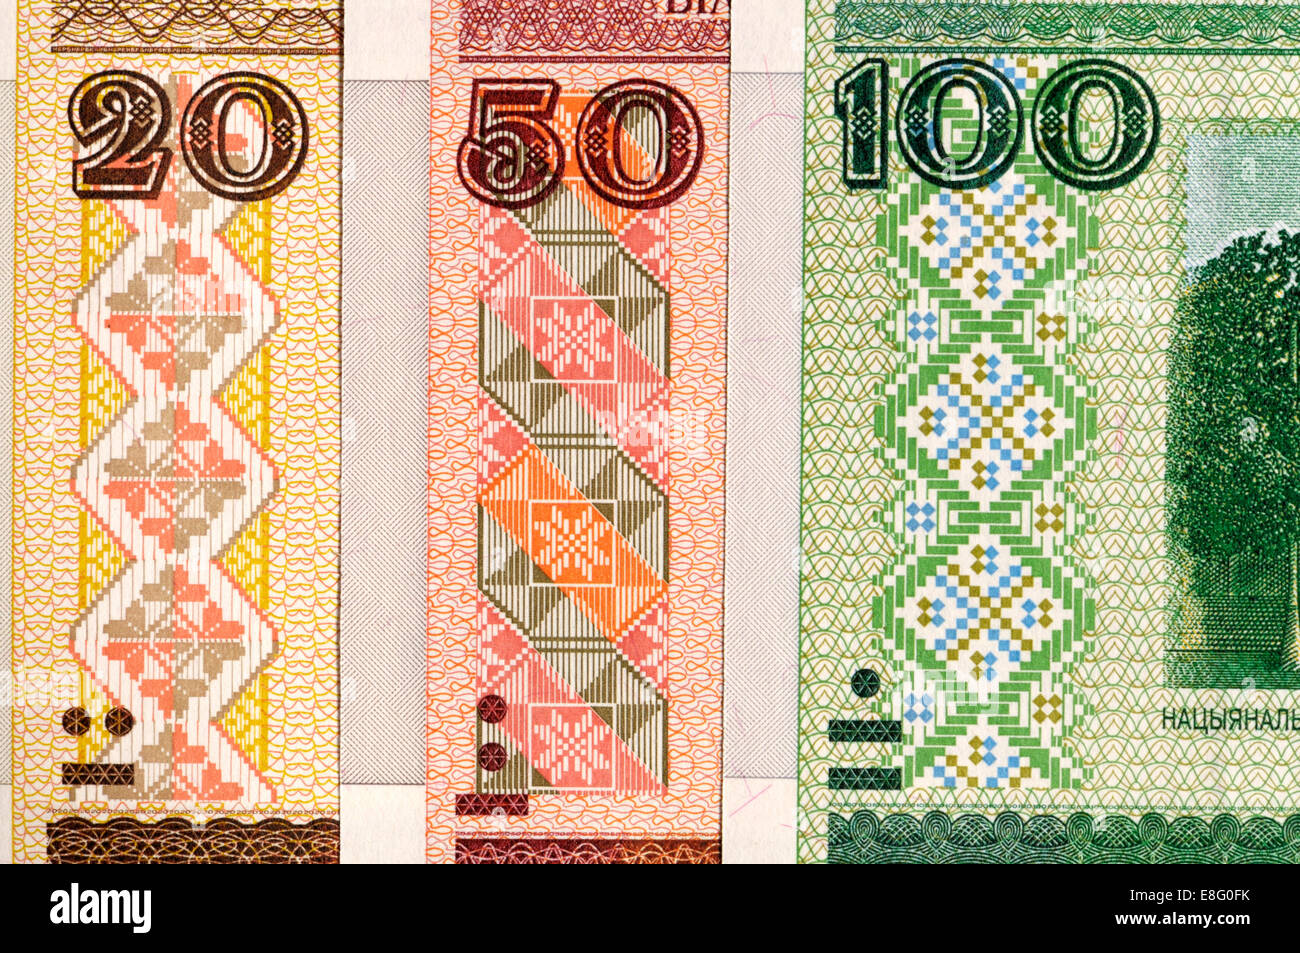 Detail der Belarus-Banknoten zeigen die blinde Code - erhöhte Stichtiefdruck gedruckt Feature, die Blinden zu helfen. 20, 50 und 100 Rubel Stockfoto